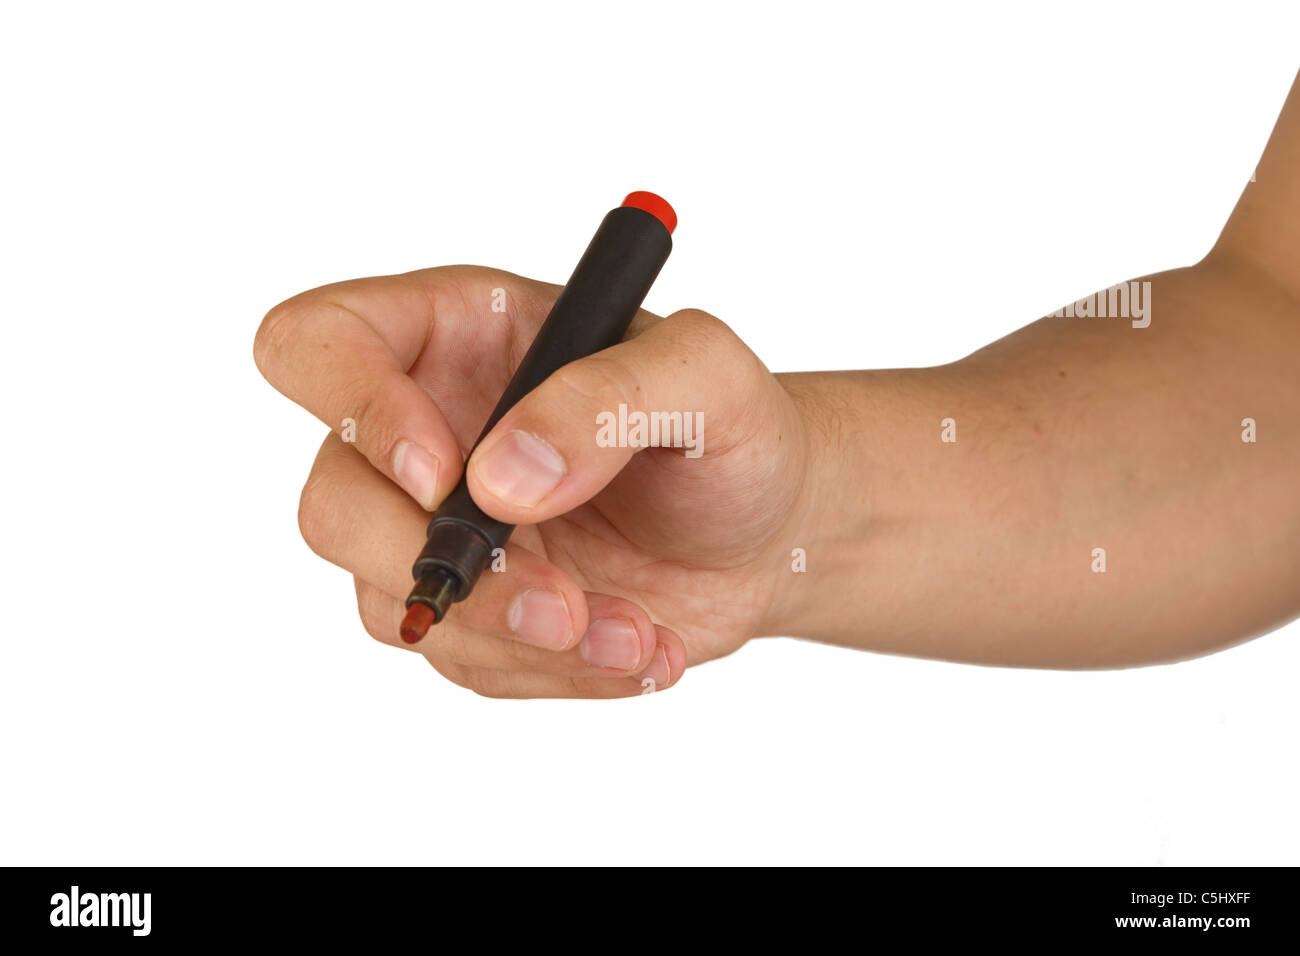 männliche Hand mit roten Markierung isoliert auf weißem Hintergrund Stockfoto